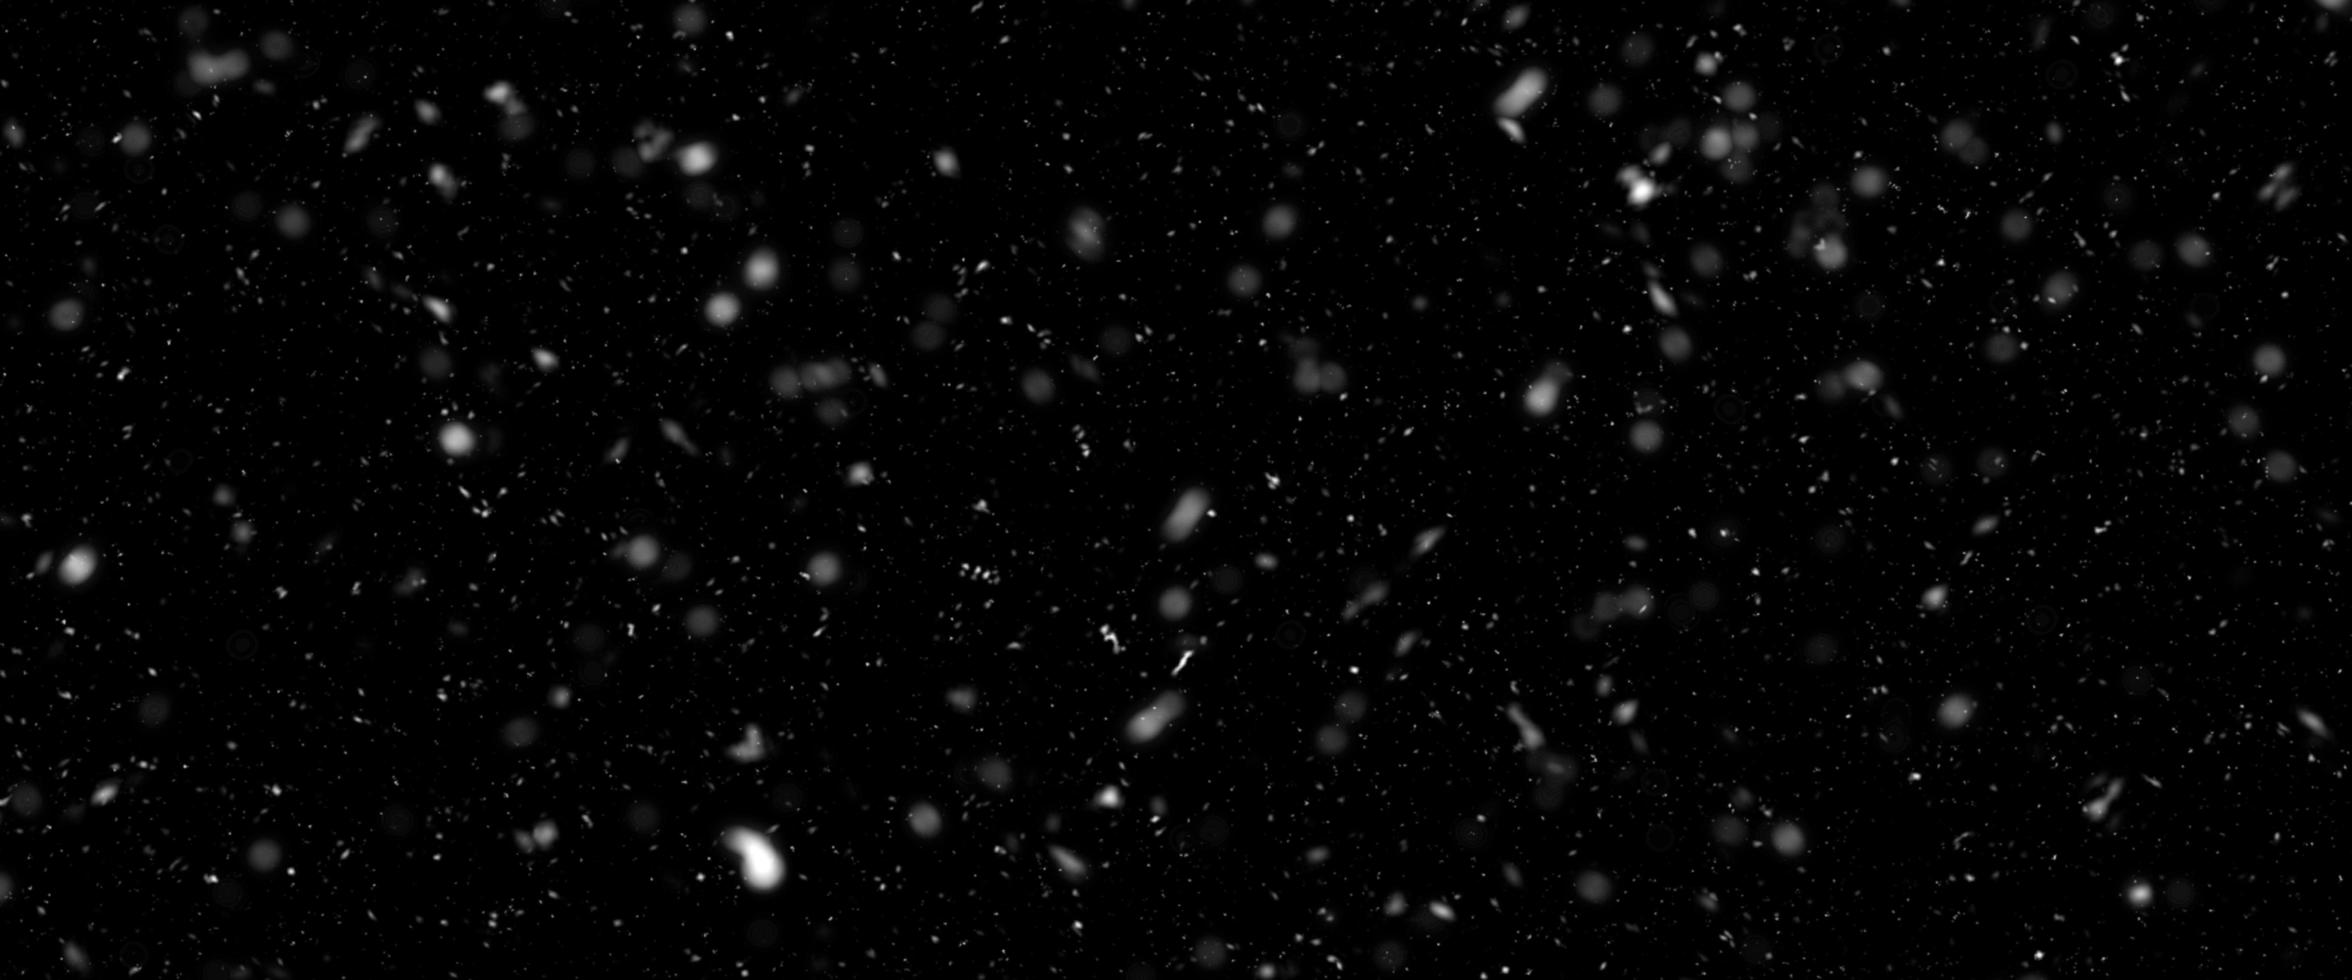 faller snö isolerat på svart bakgrund. faller snö på natt. bokeh lampor på svart bakgrund, flygande snöflingor i de luft. vinter- väder. täcka över textur. foto